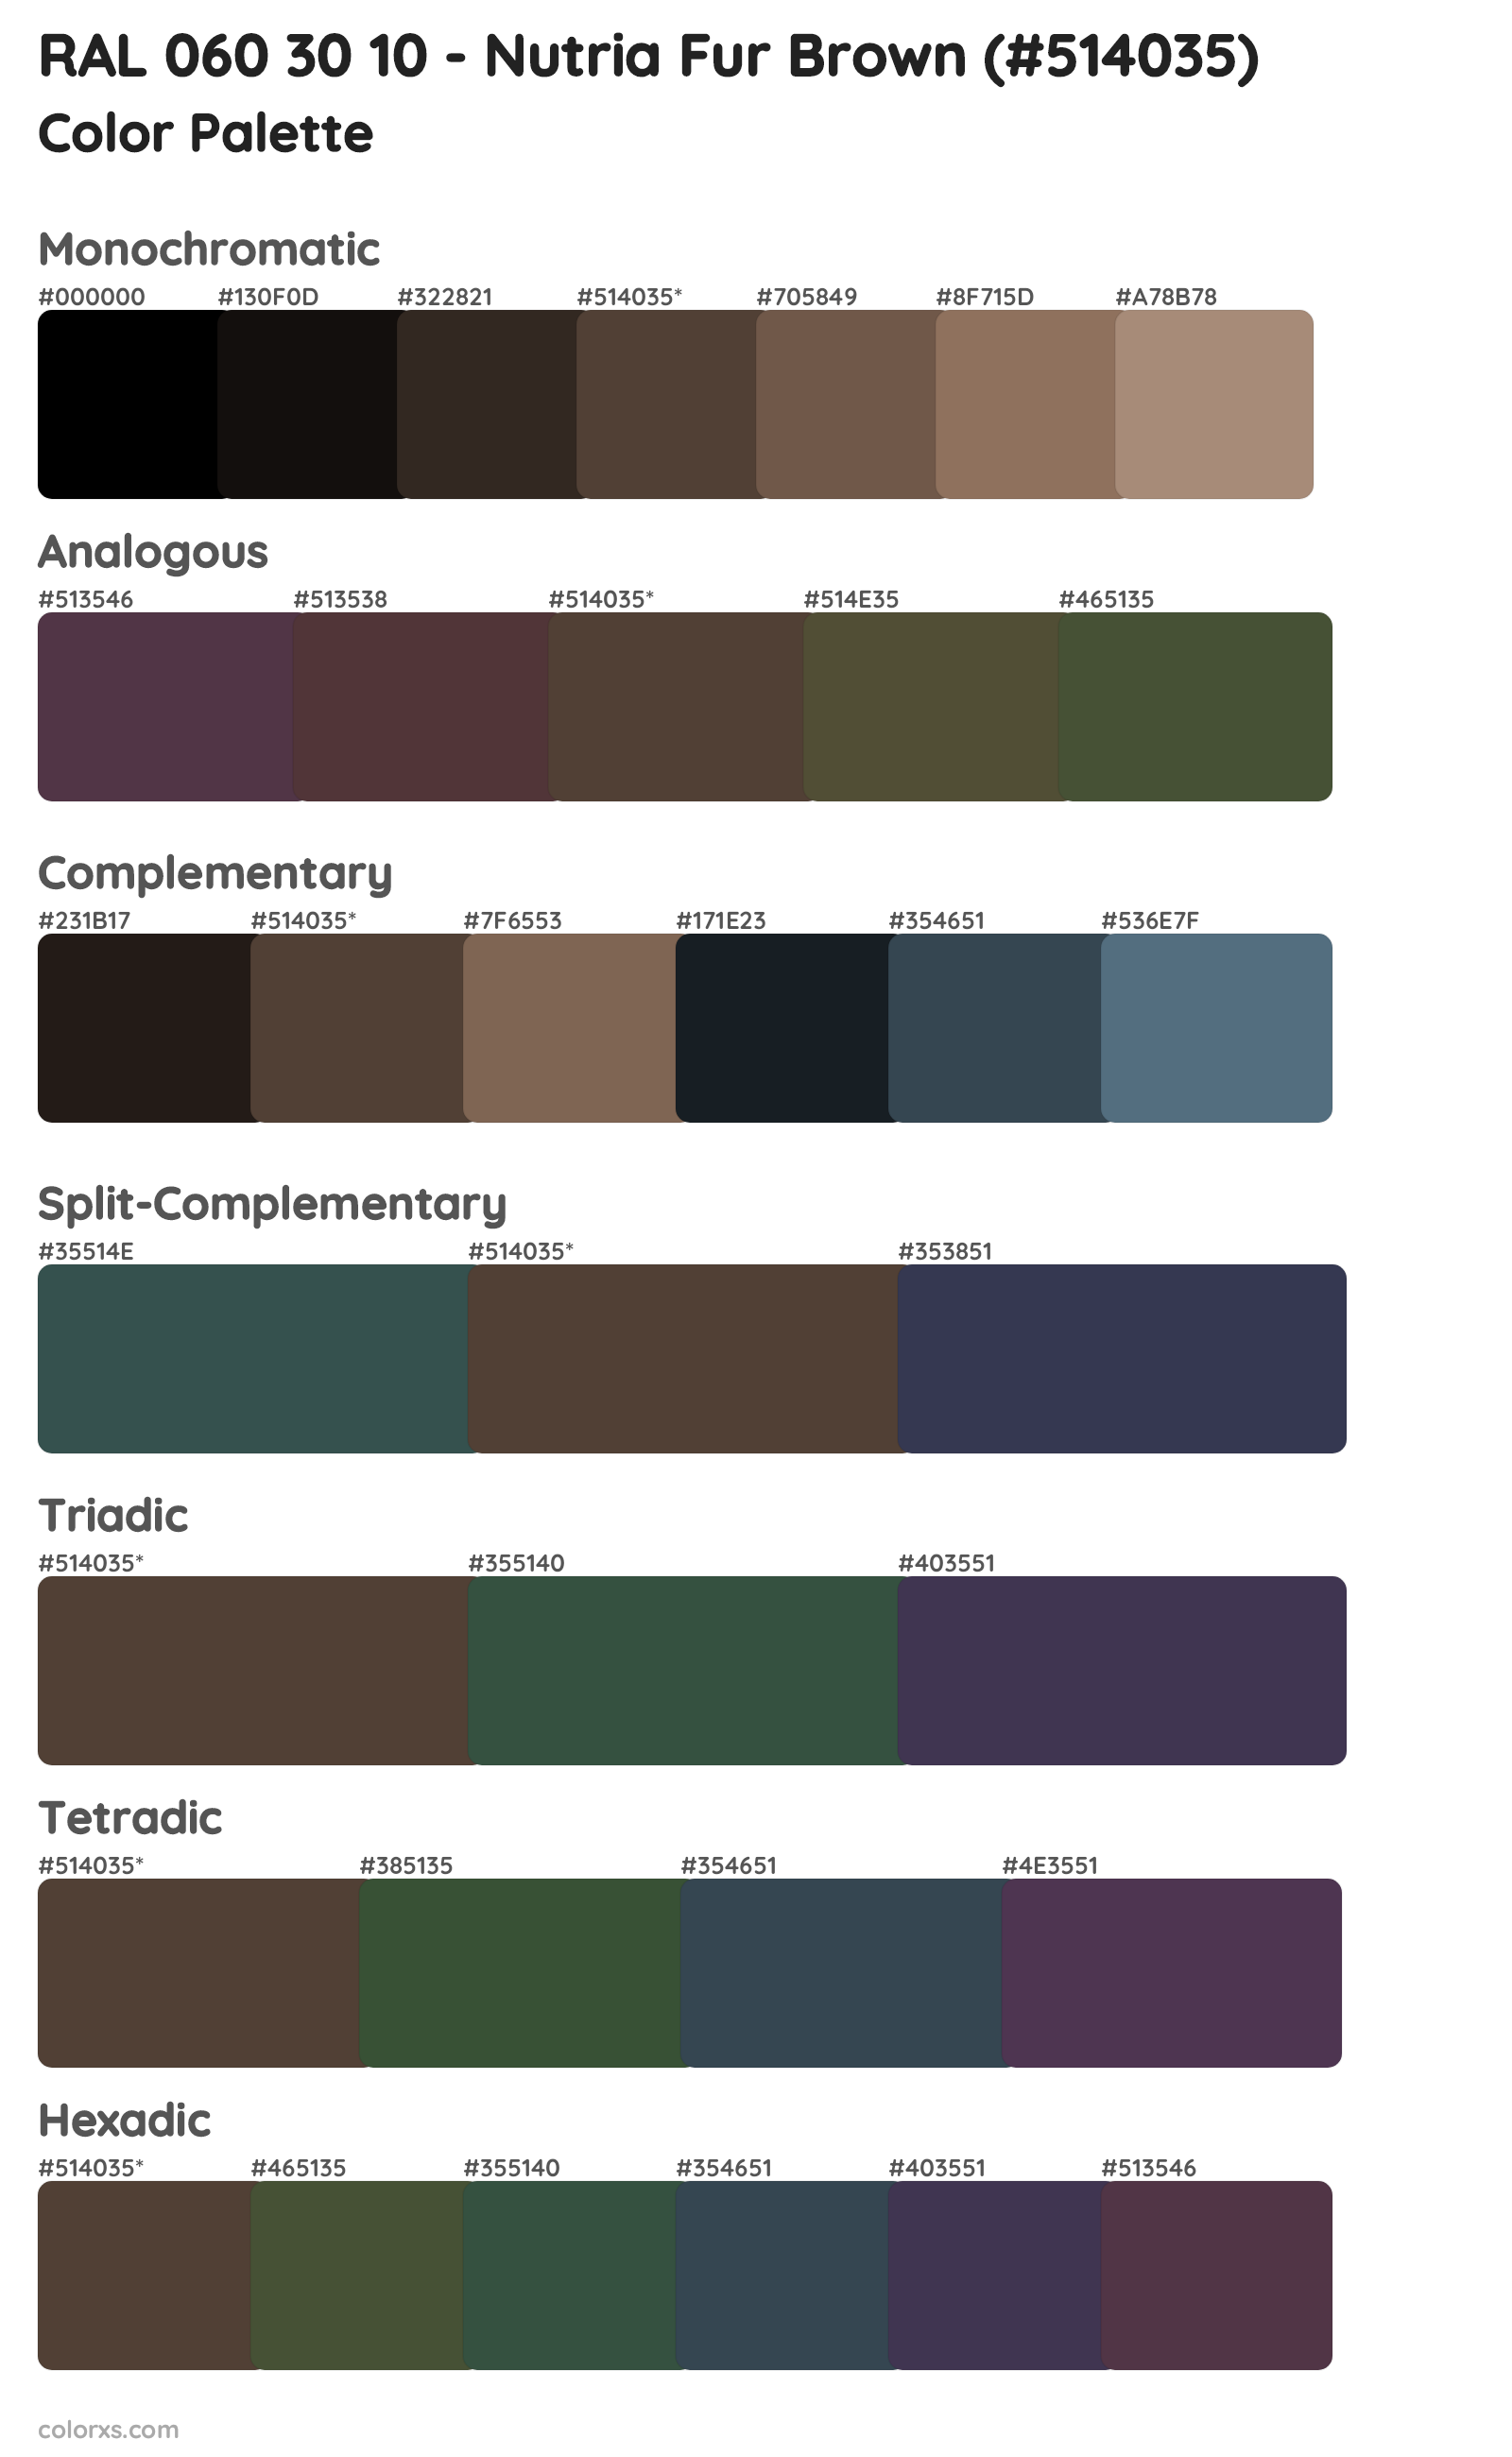 RAL 060 30 10 - Nutria Fur Brown Color Scheme Palettes